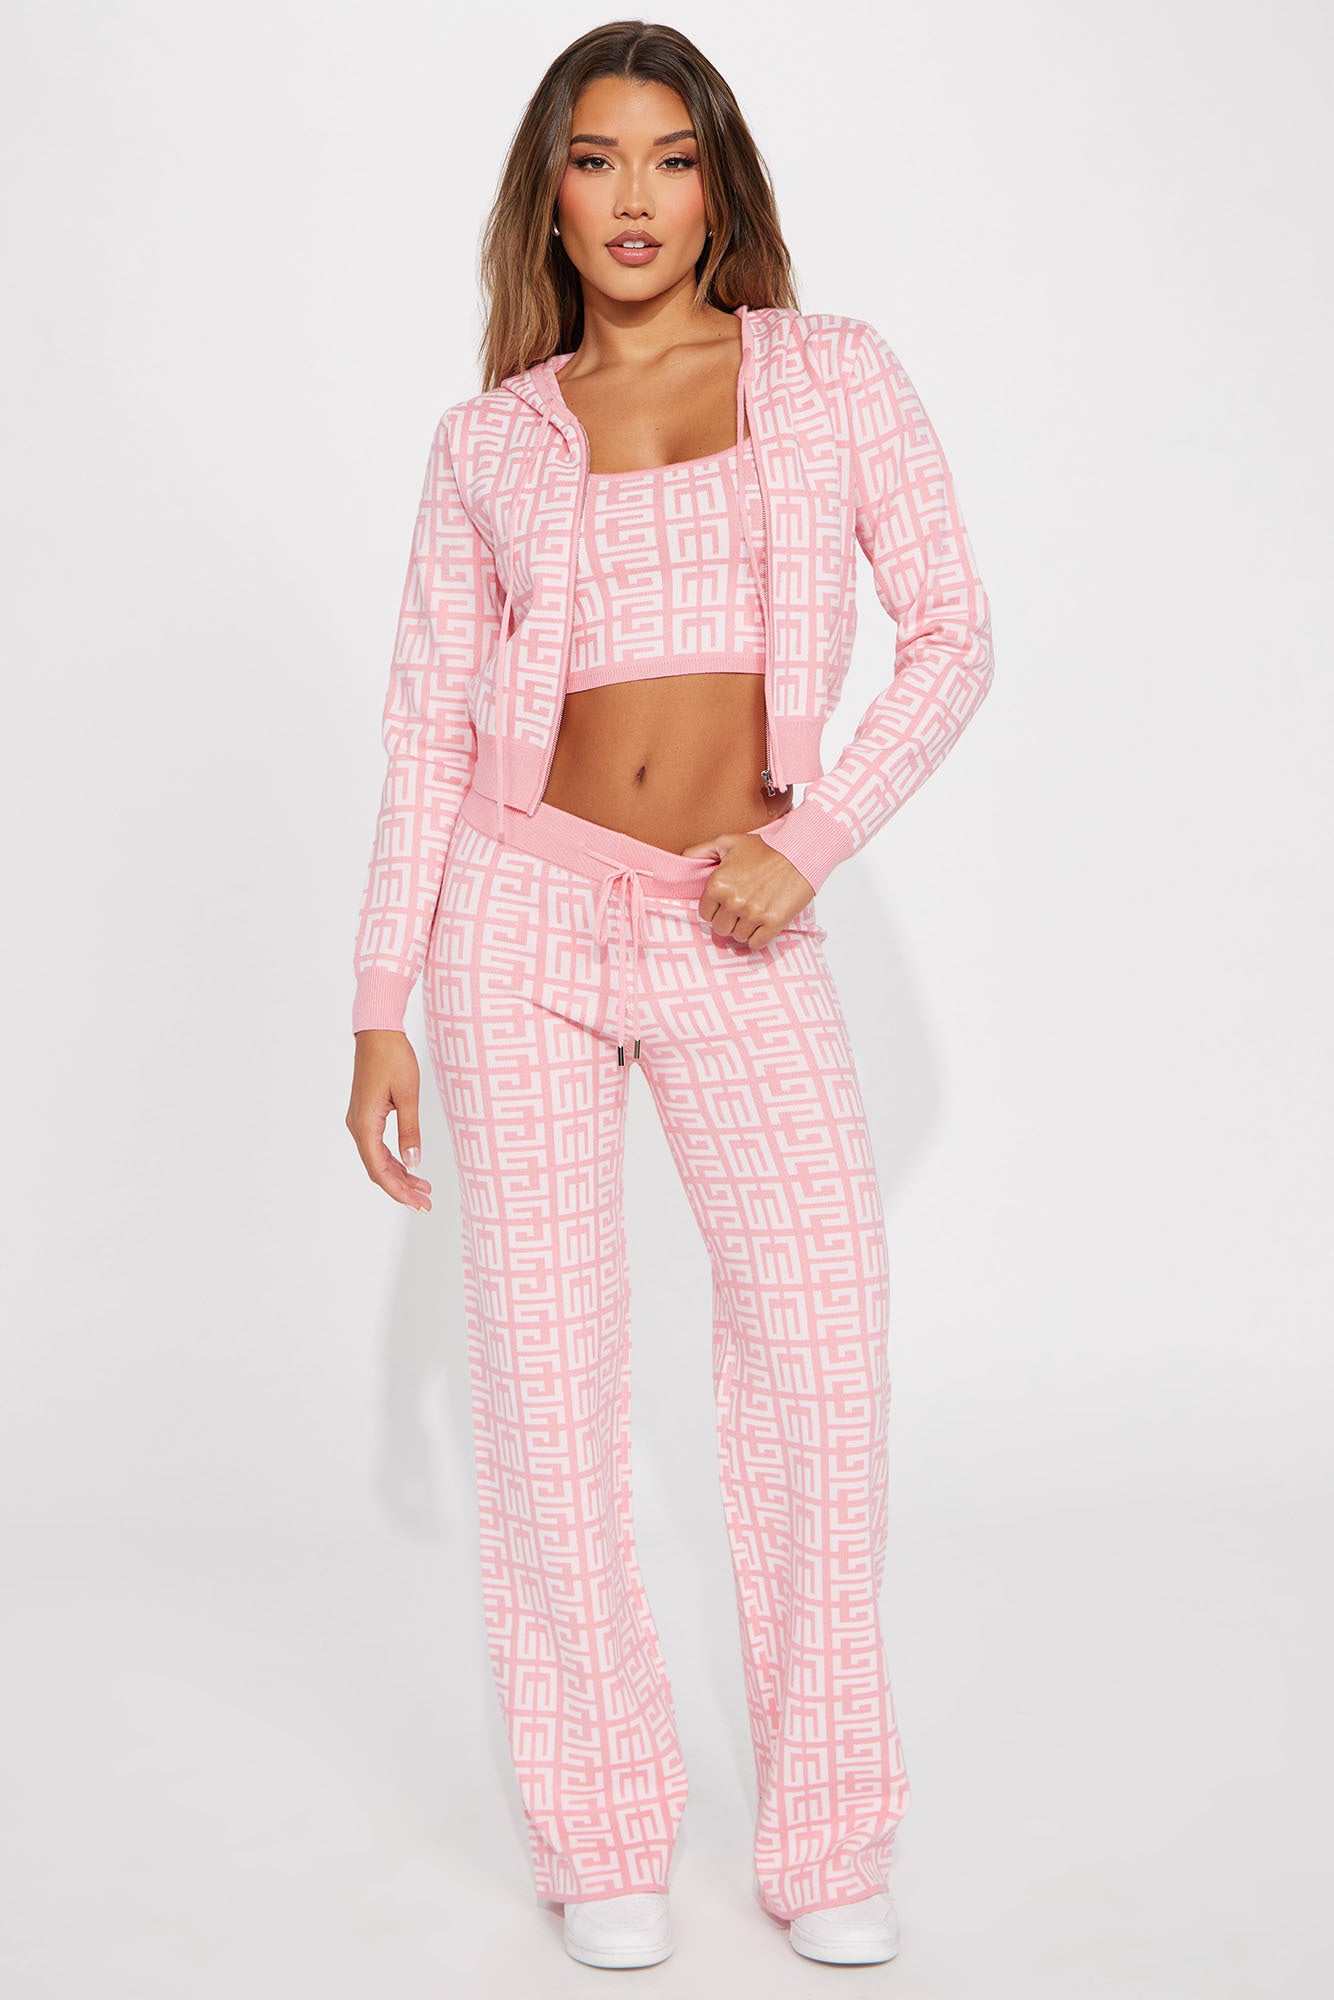 Pamela Pearl 3 Piece Blazer Pant Set - Blush